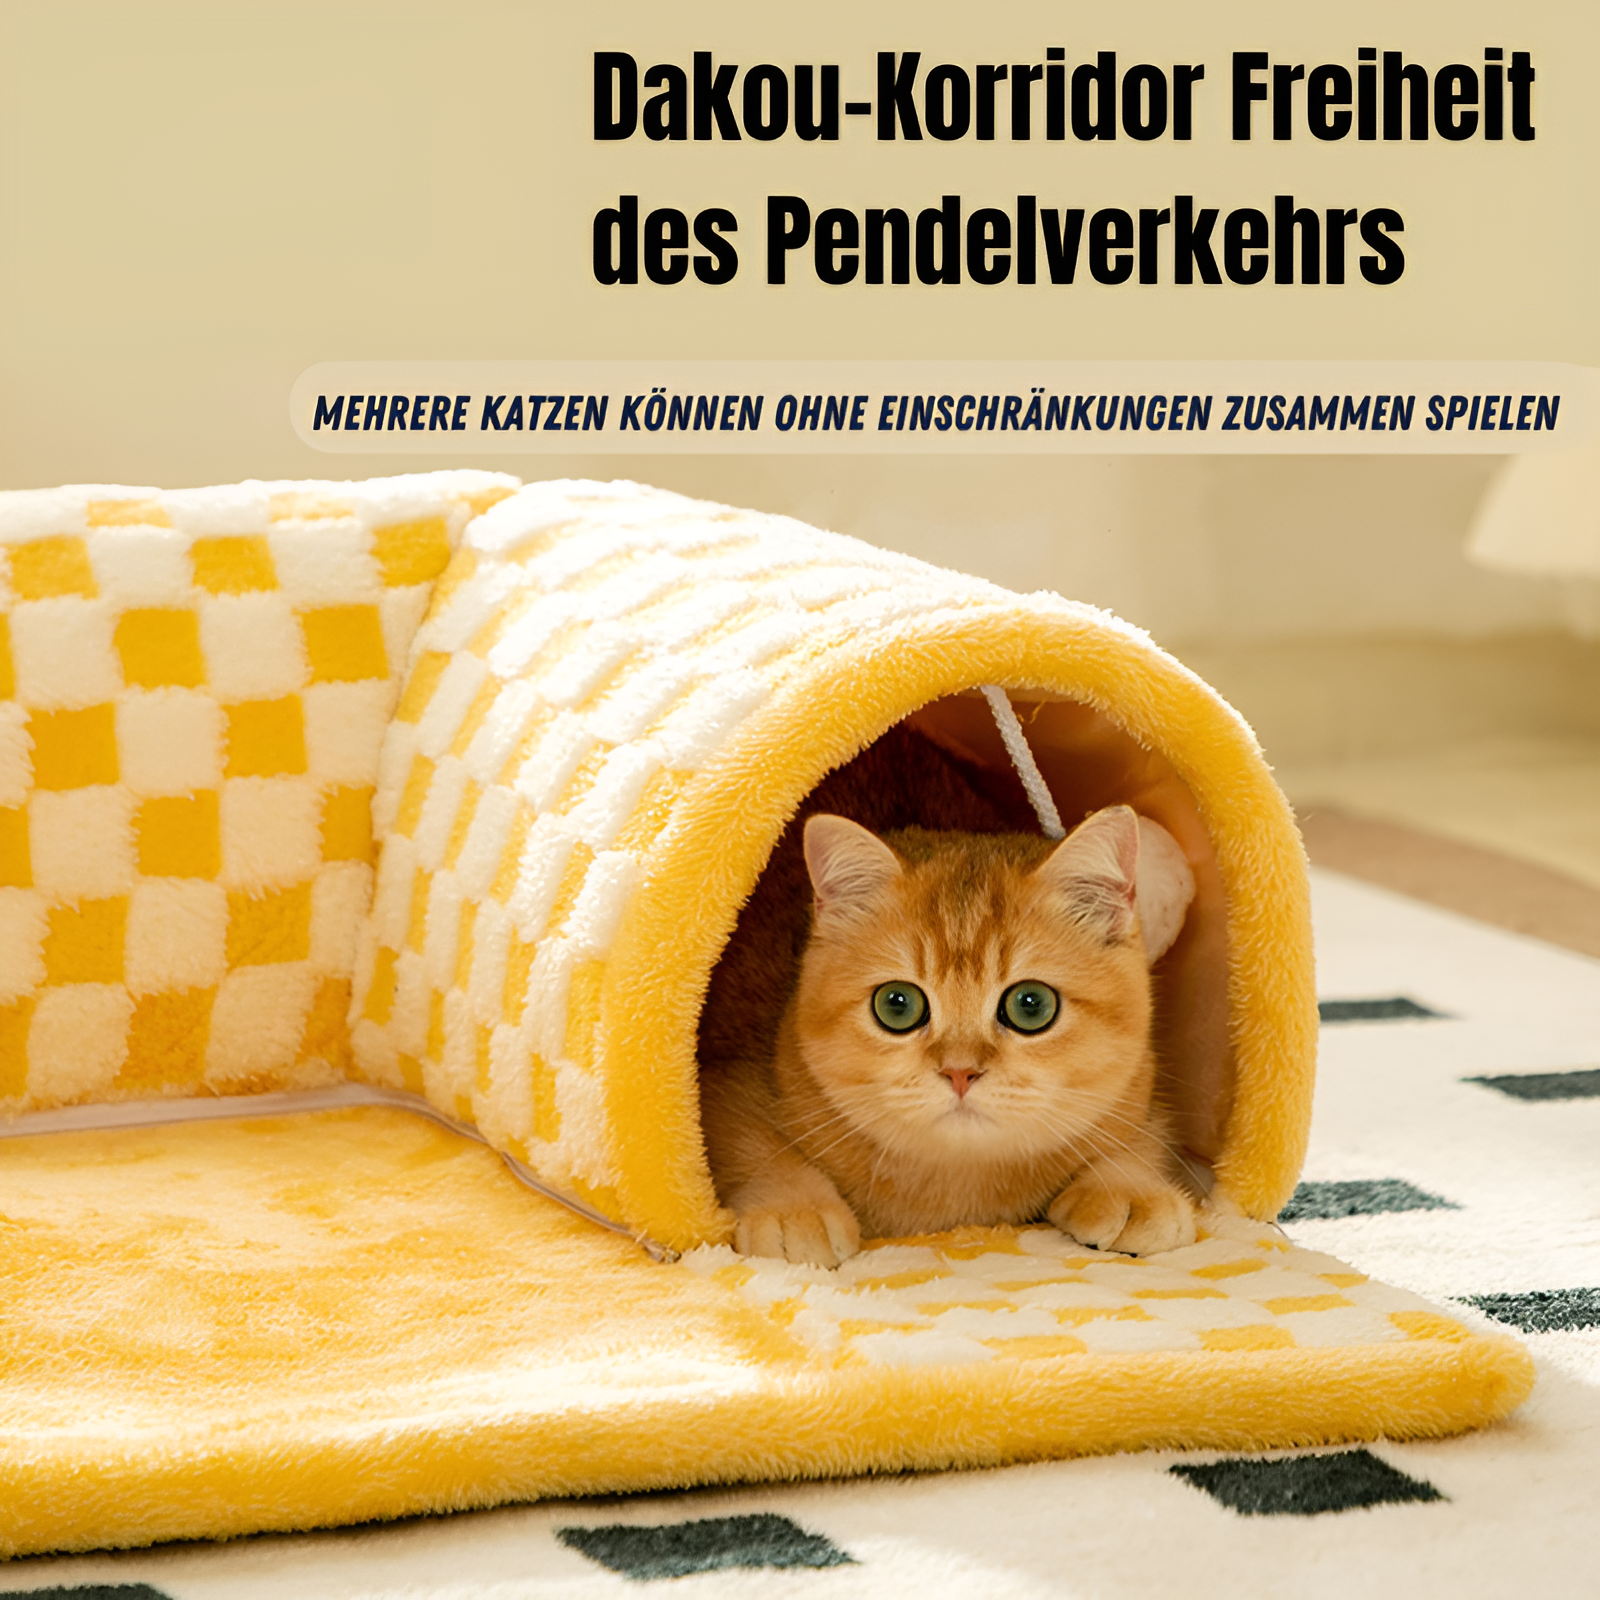 Tunnelbett™ - Bieten Sie Ihrer Katze ultimativen Komfort und Hygiene | 50% RABATT